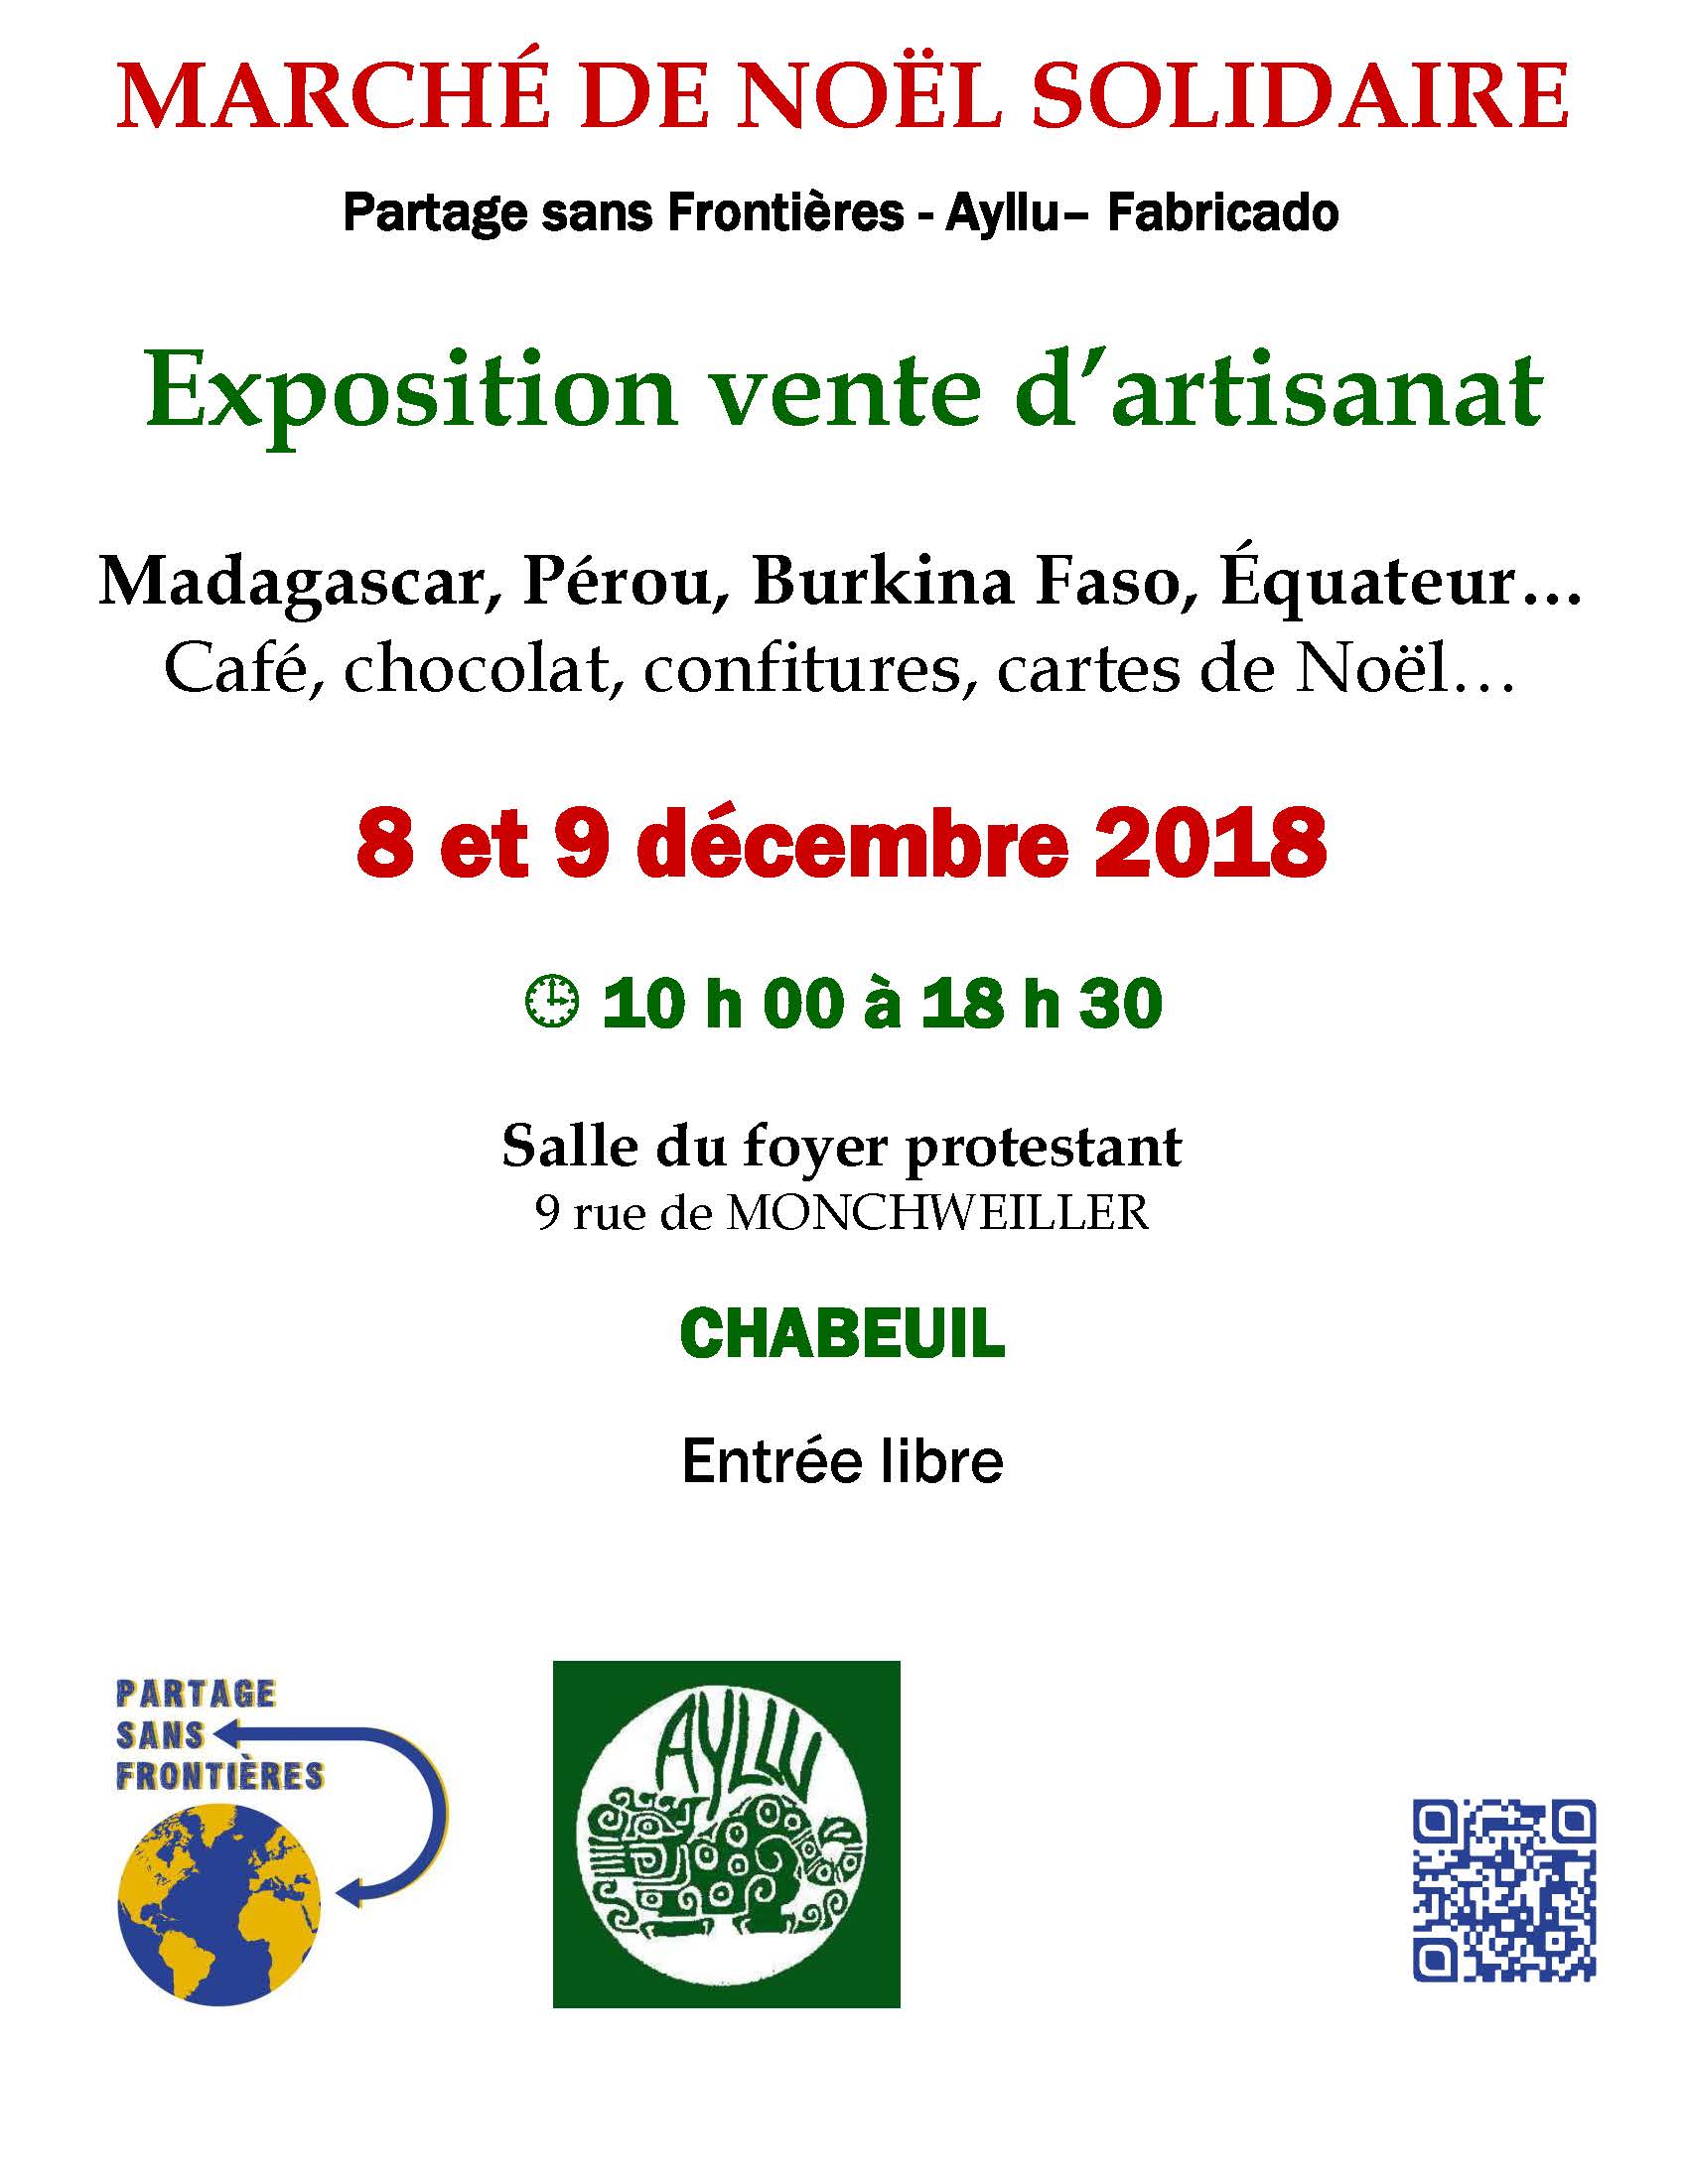 Marché de Noël solidaire de Chabeuil